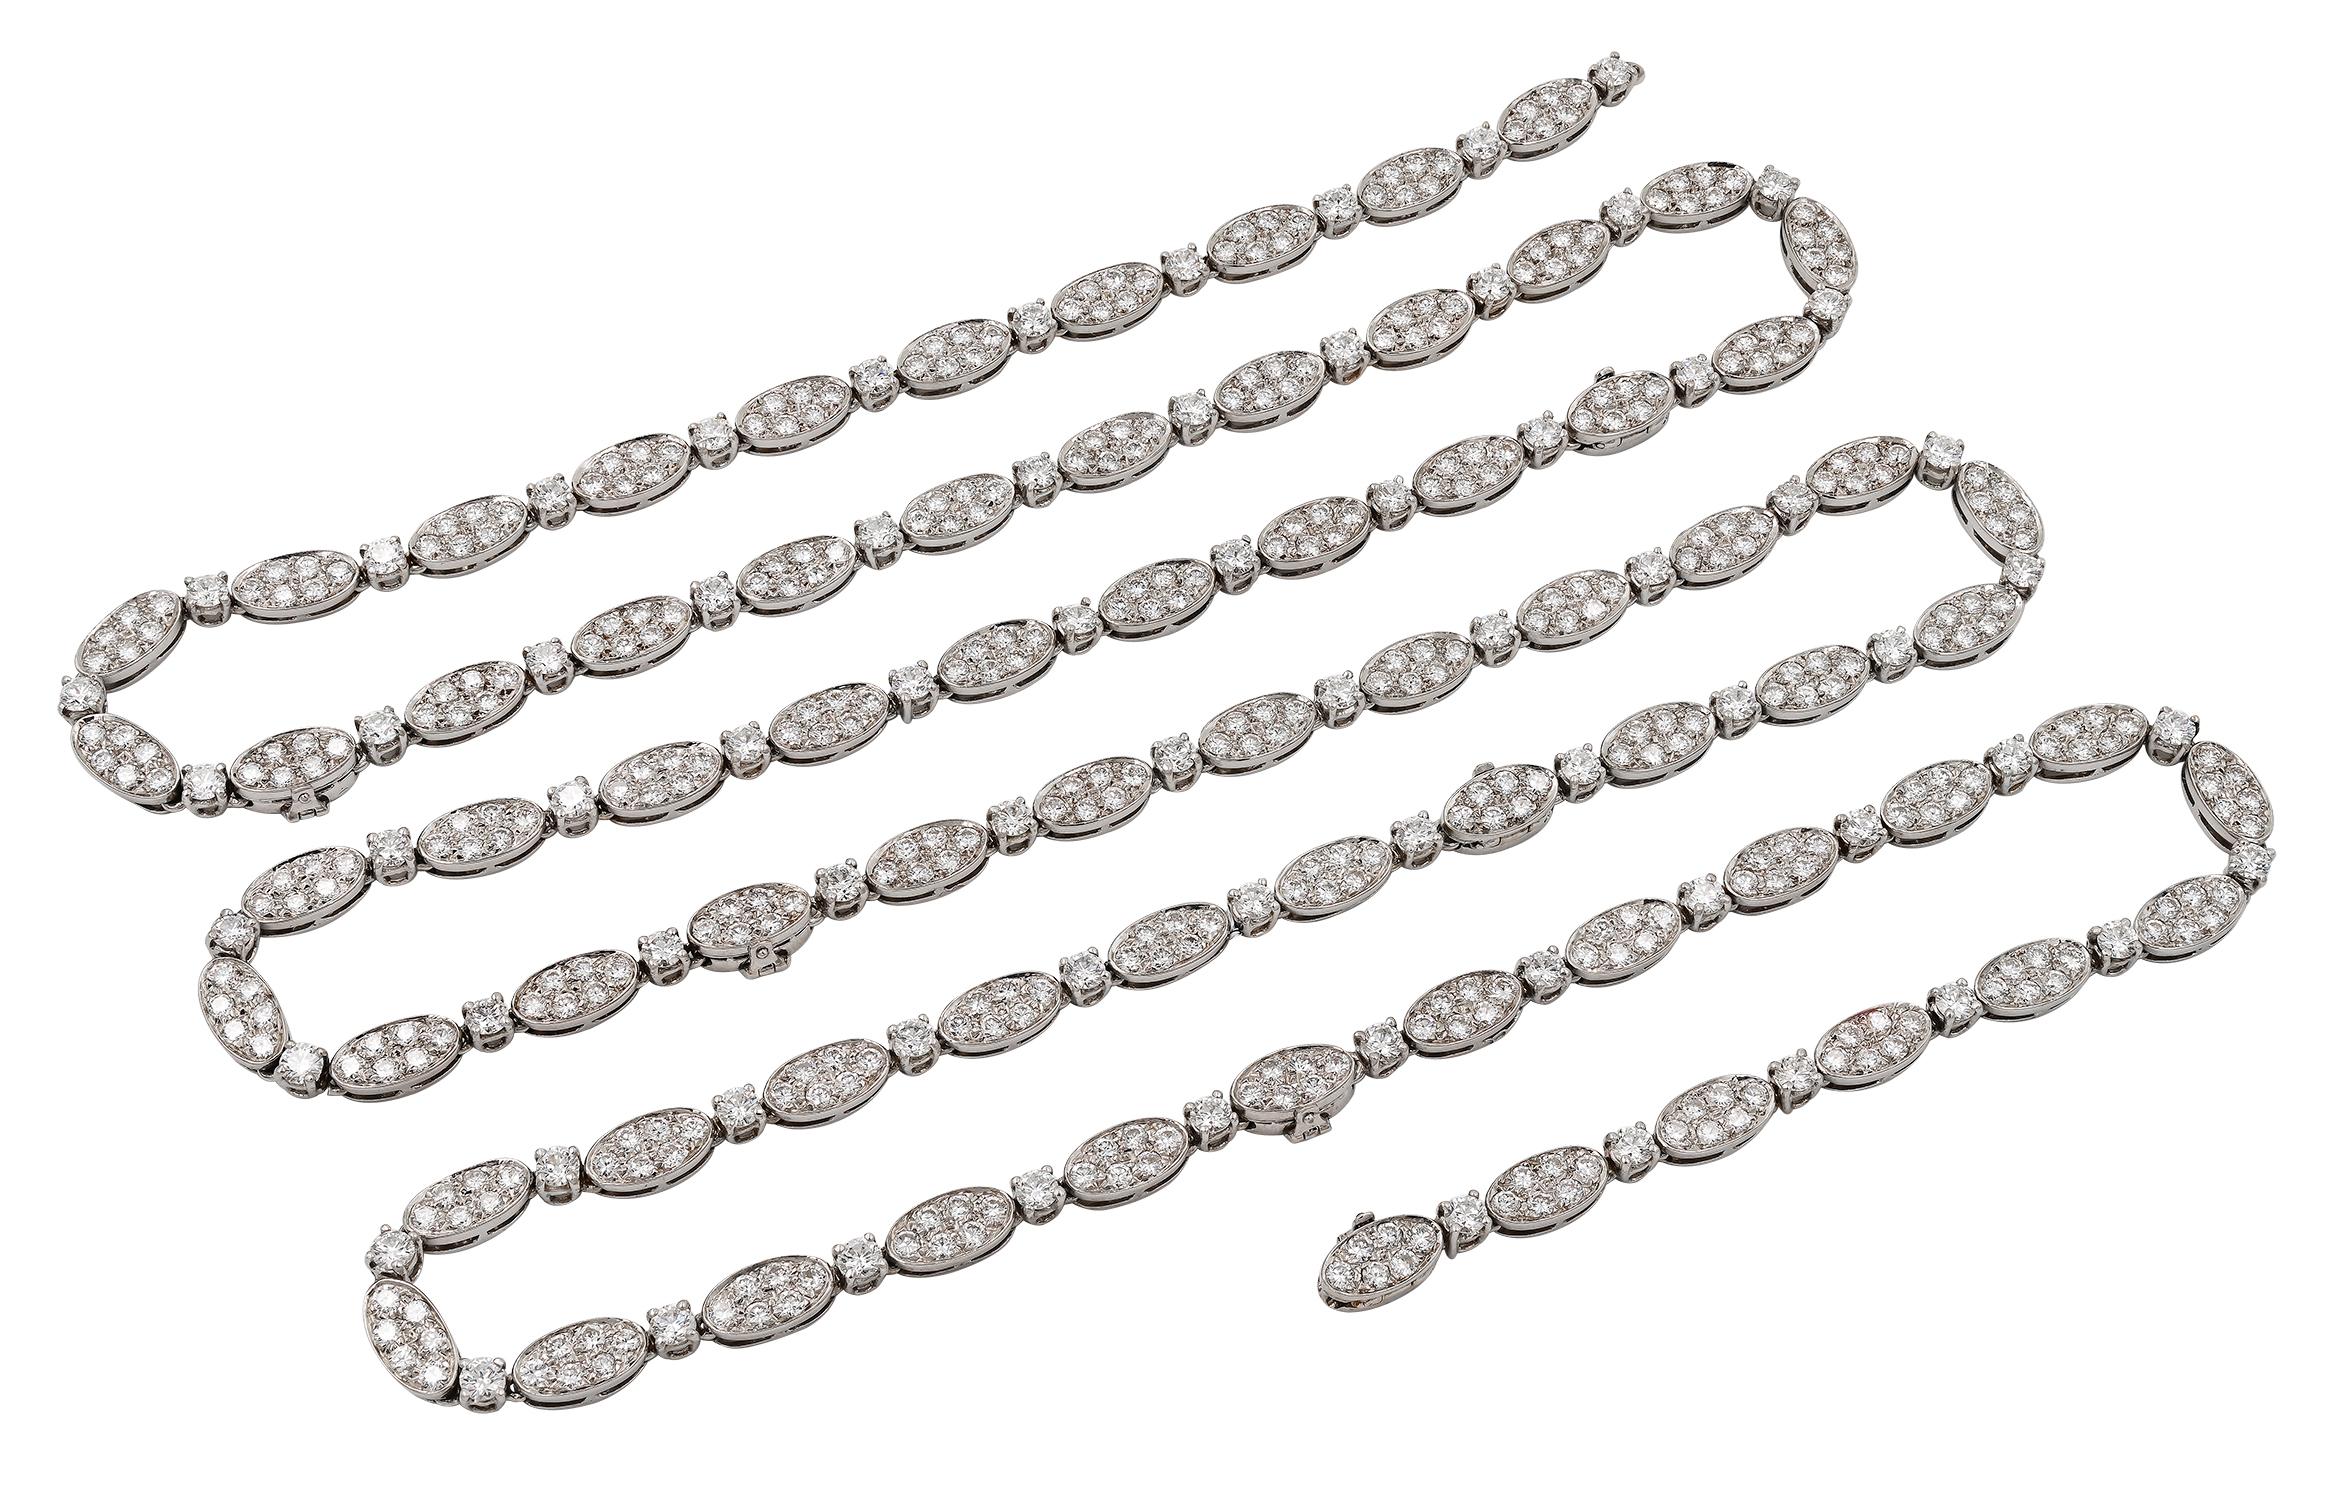 COLLIER VAN CLEEF.

Un magnifique exemple d'élégance et de sophistication de la part du célèbre joaillier parisien Van Cleef and Arpels .

Ce collier de style opéra est serti d'environ 30 carats de diamants ronds incolores de taille